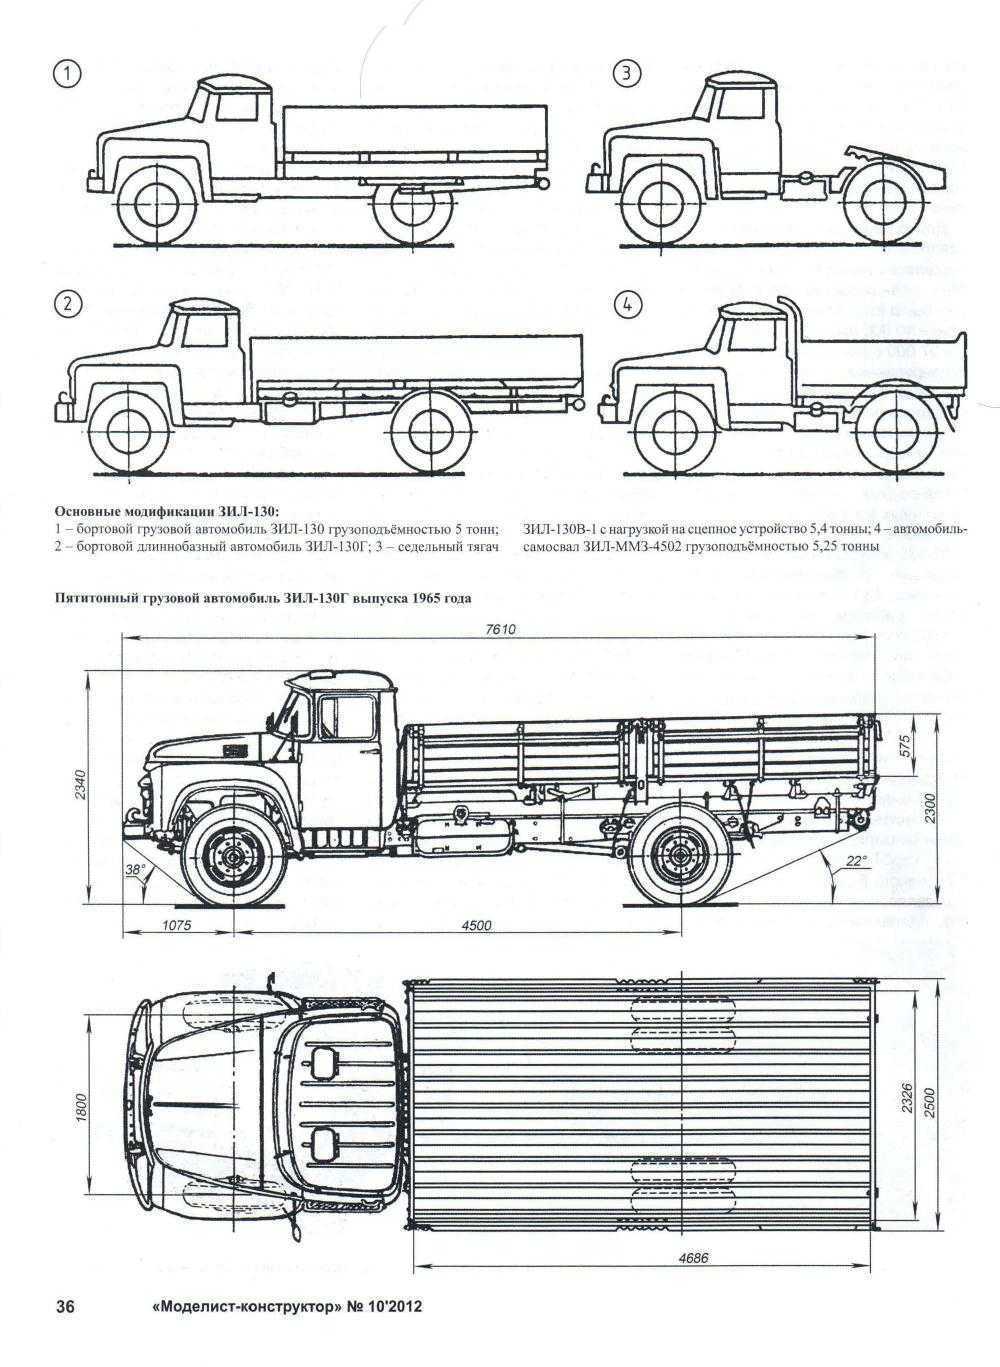 Технические характеристики грузовика зил-4333 и аналогичные среднетоннажные автомобили — передаем суть